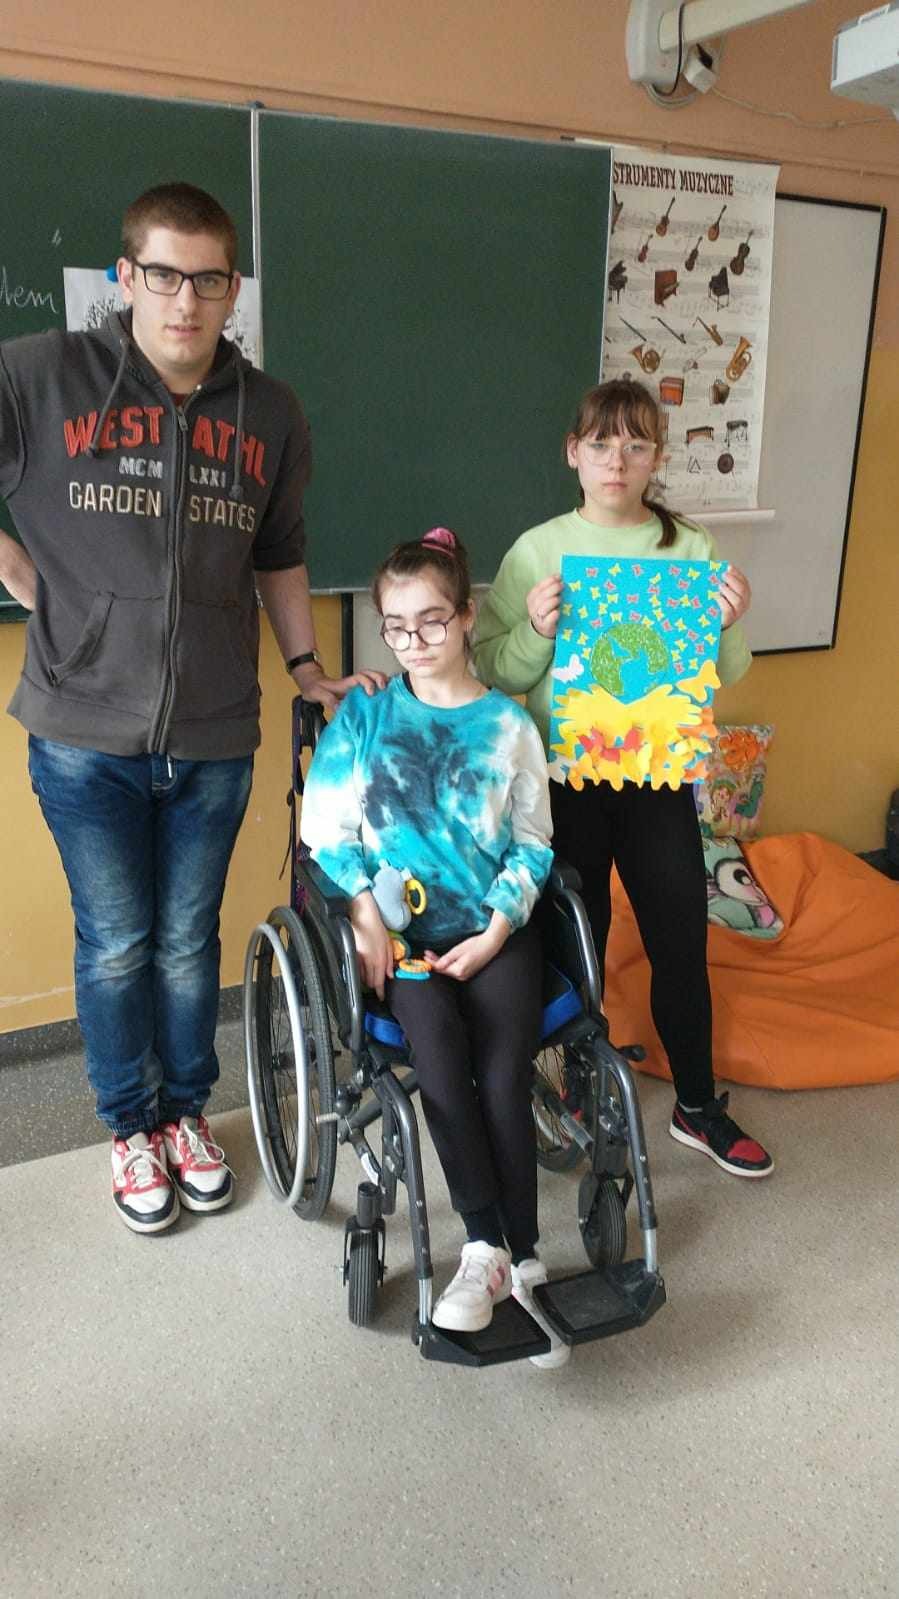 3 uczniów, w tym 1 na wózku prezentuje plakat dotyczący plenety Ziemia